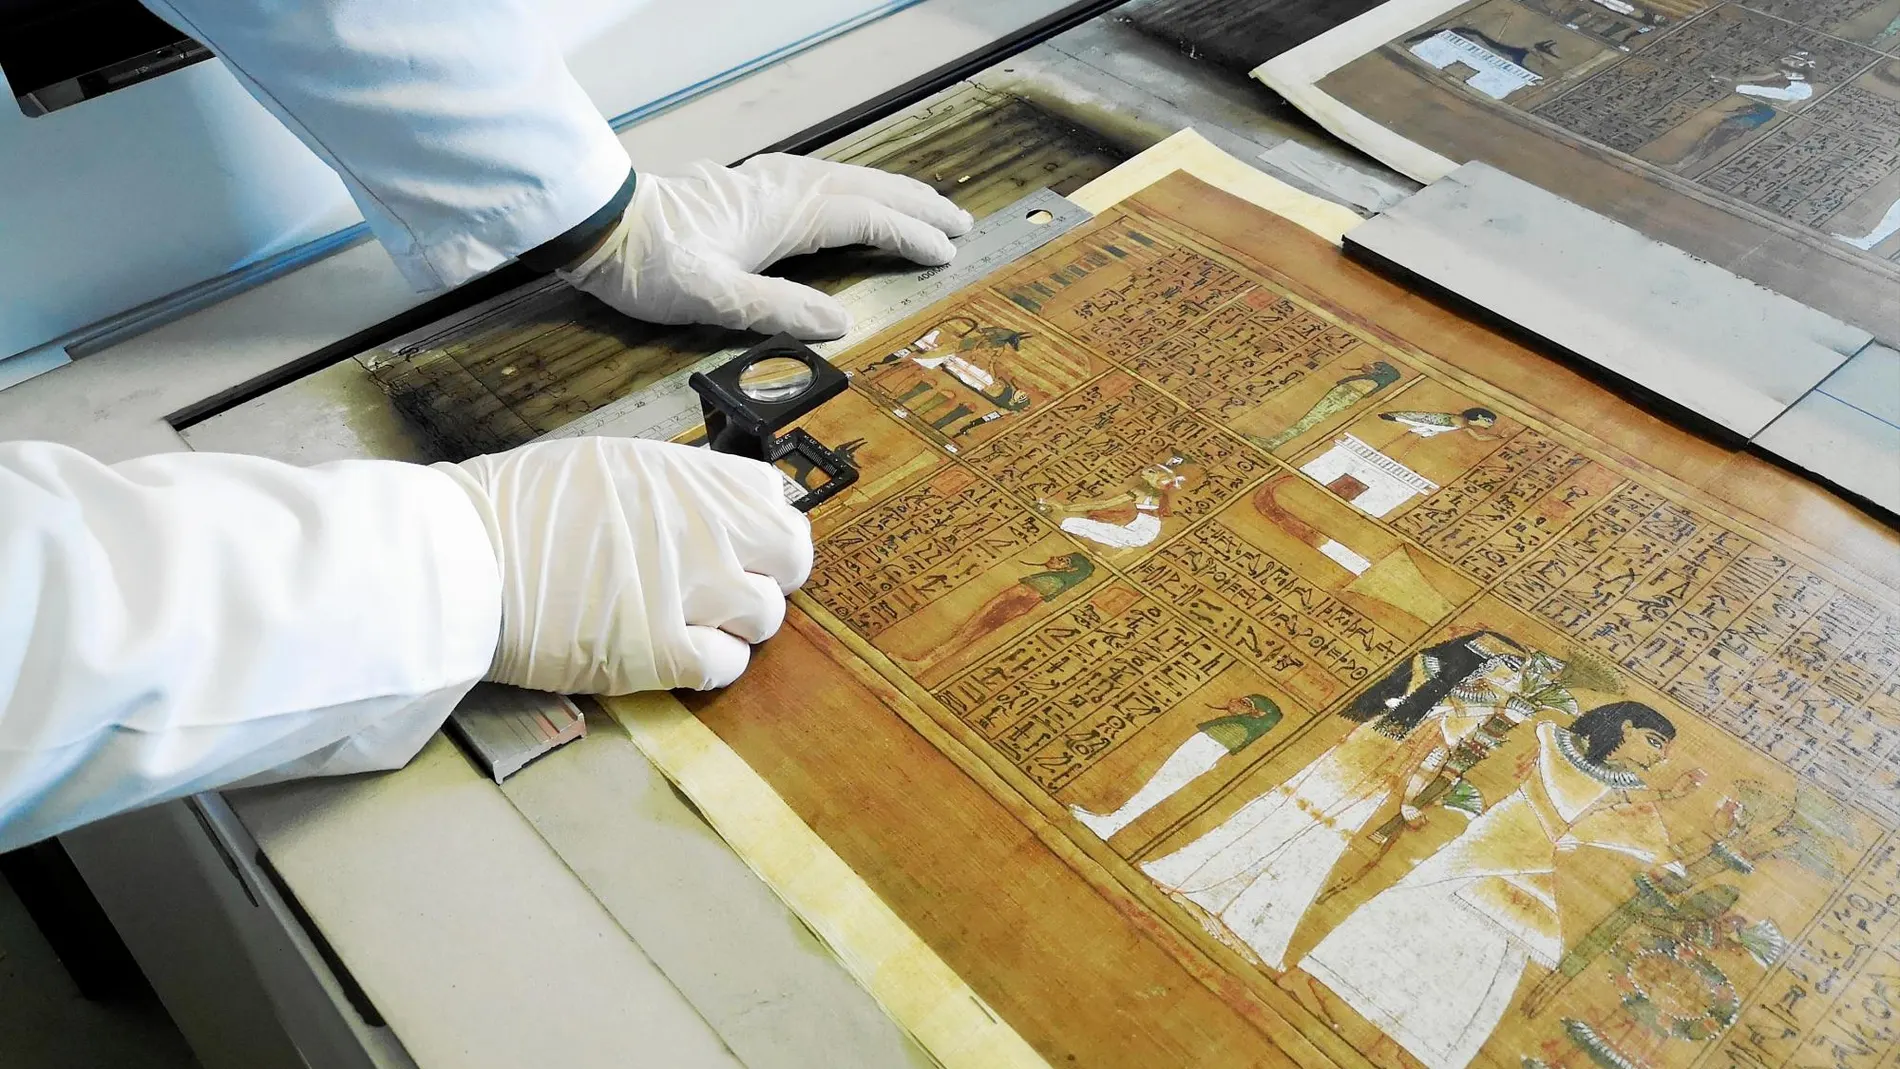 La primera dificultad con que se encontraron los editores fue importar desde Egipto los 72.000 pliegos de papiro que necesitaban para los facsímiles.